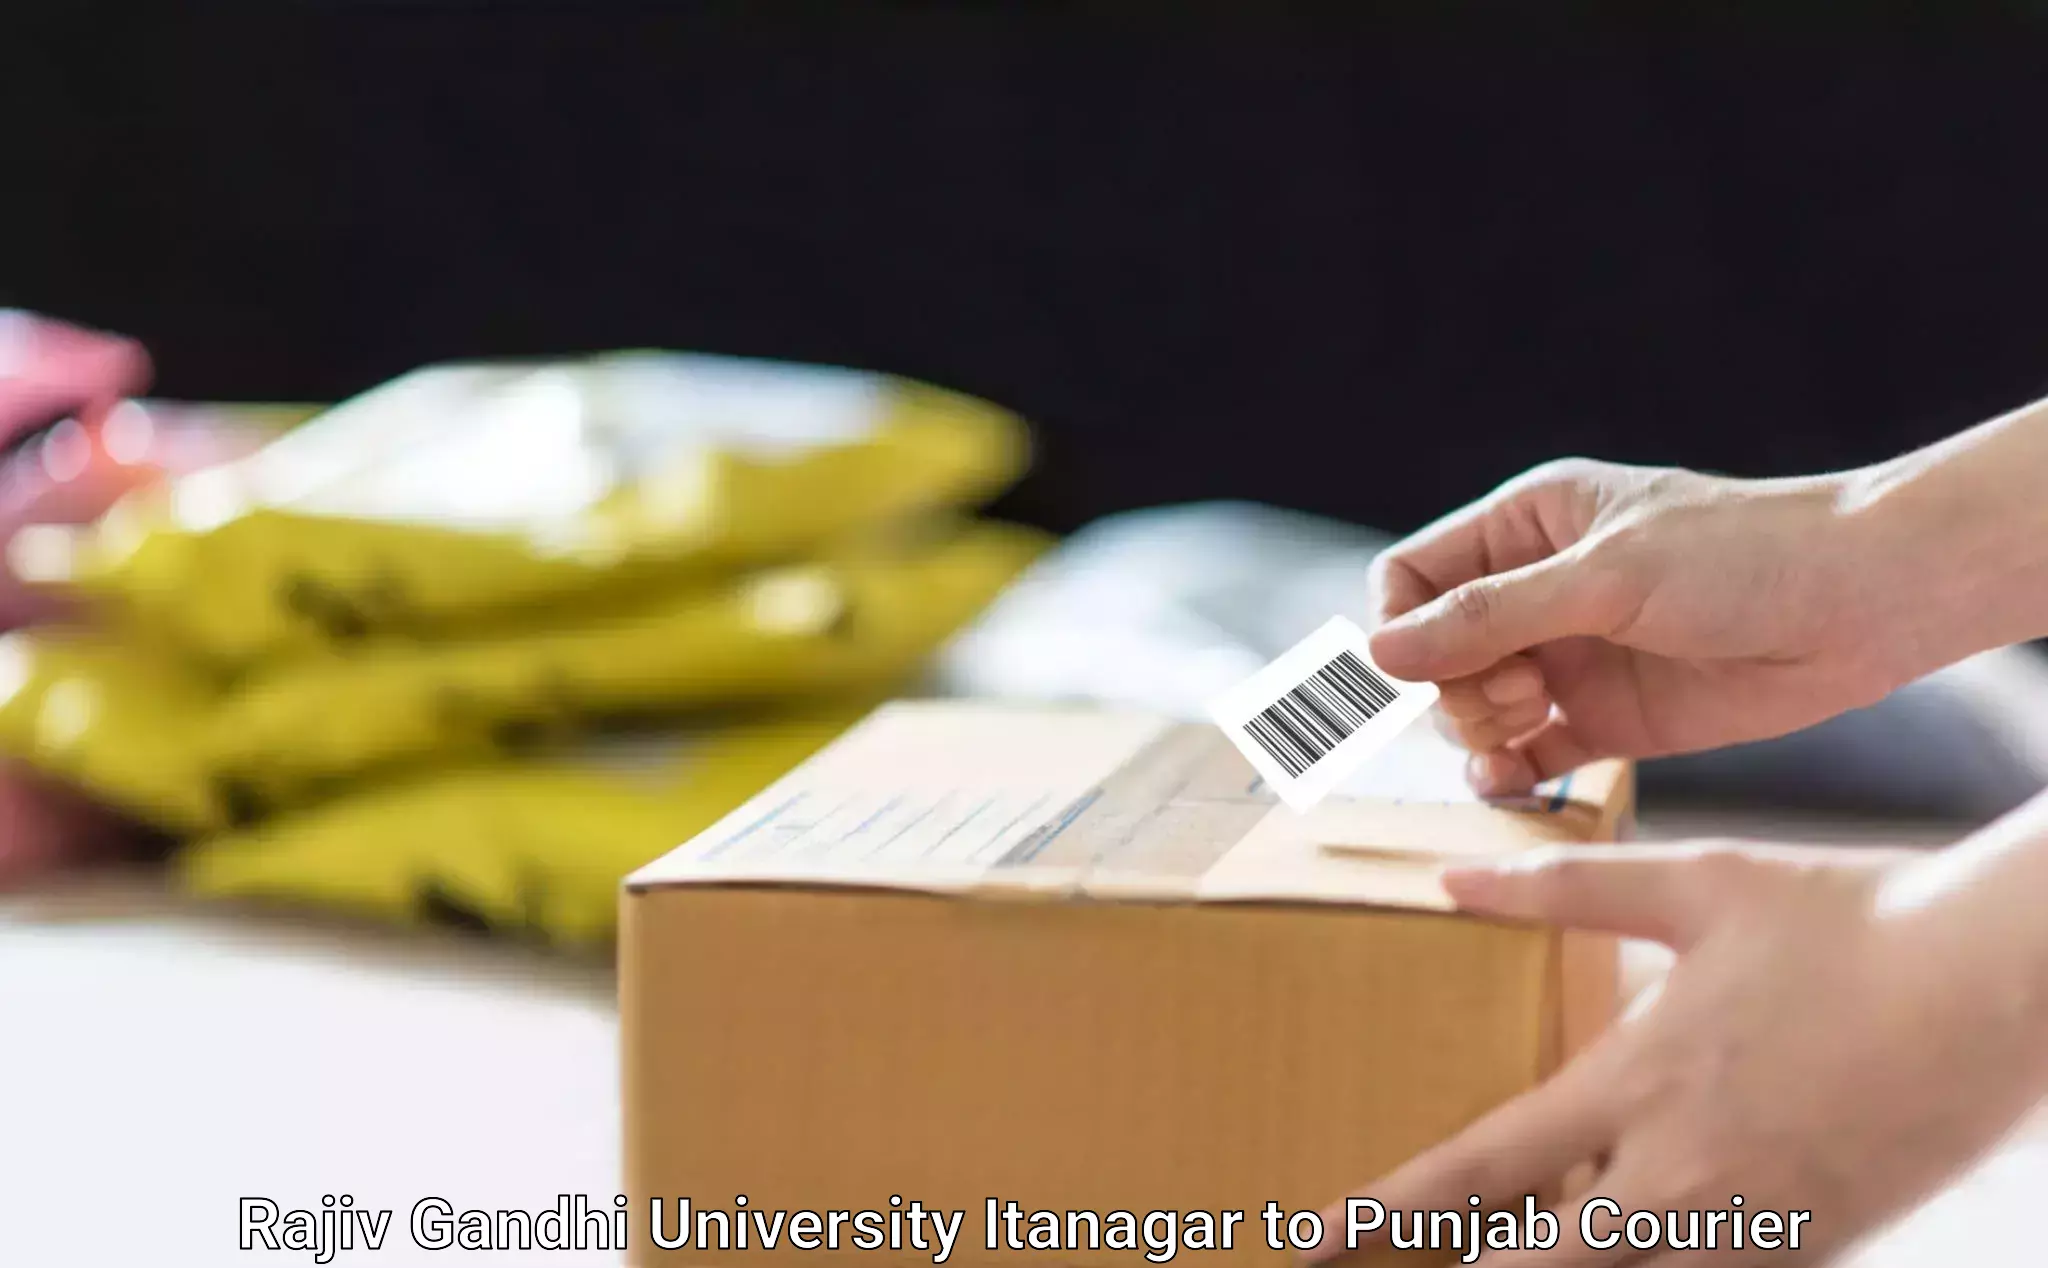 Customizable shipping options Rajiv Gandhi University Itanagar to Dinanagar